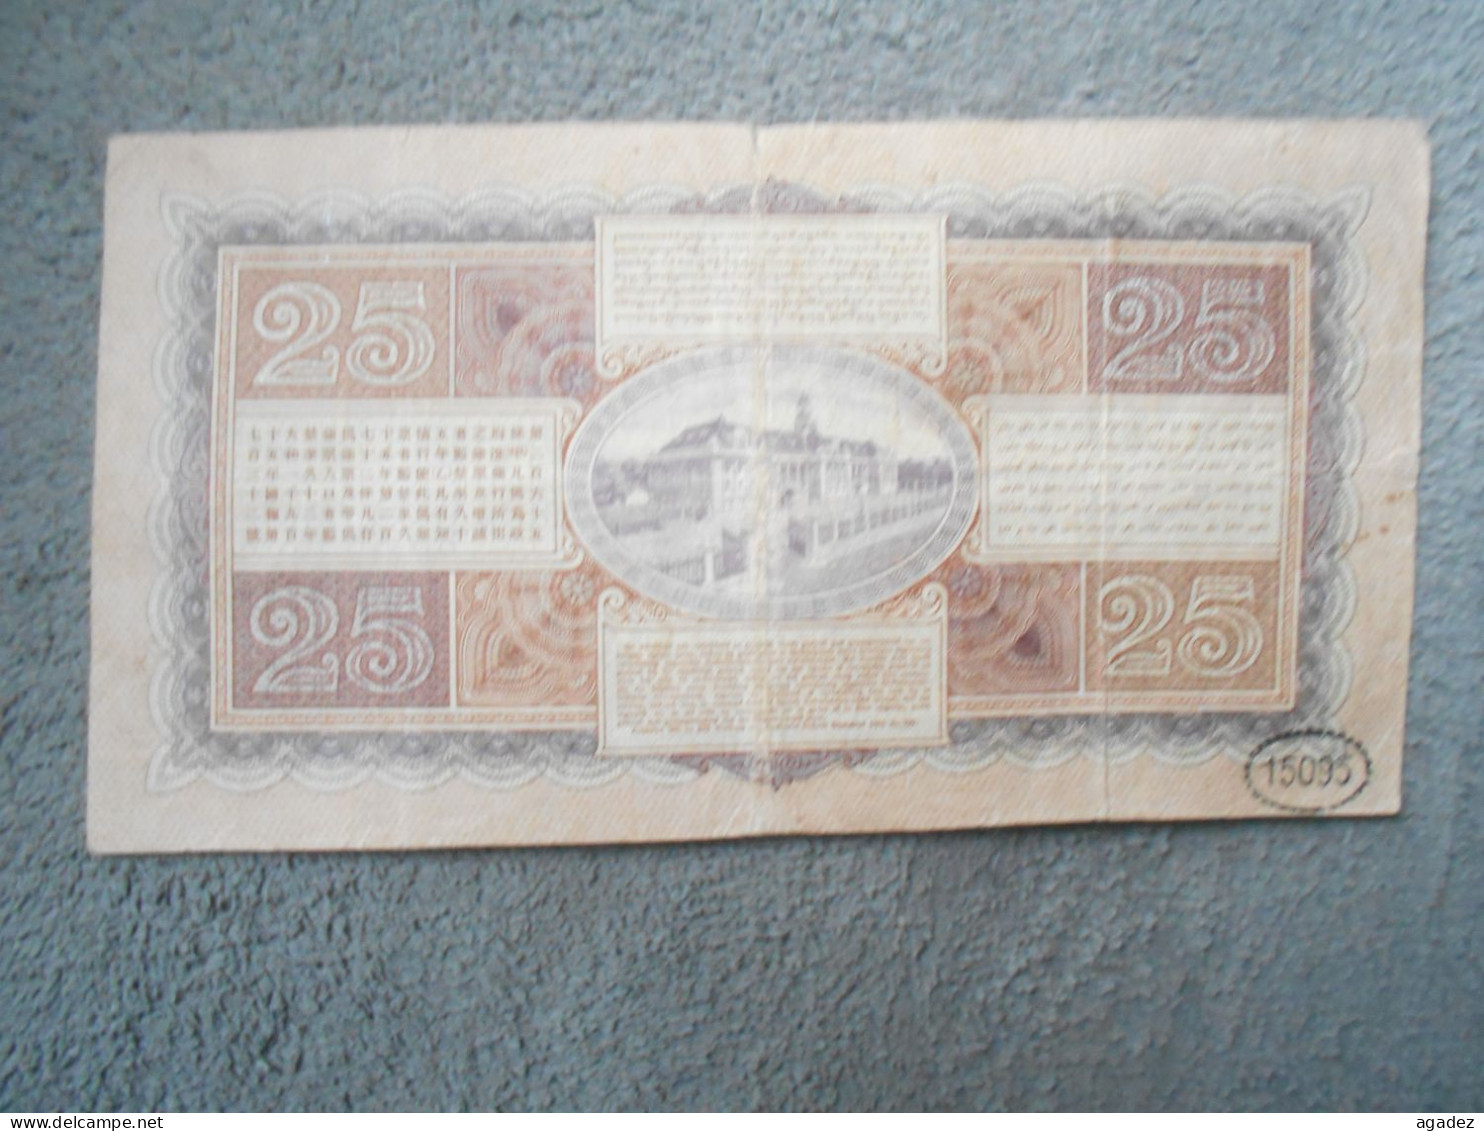 Ancien Billet De Banque Java De Javasche Bank 25 Gulden 1929 - Autres - Asie